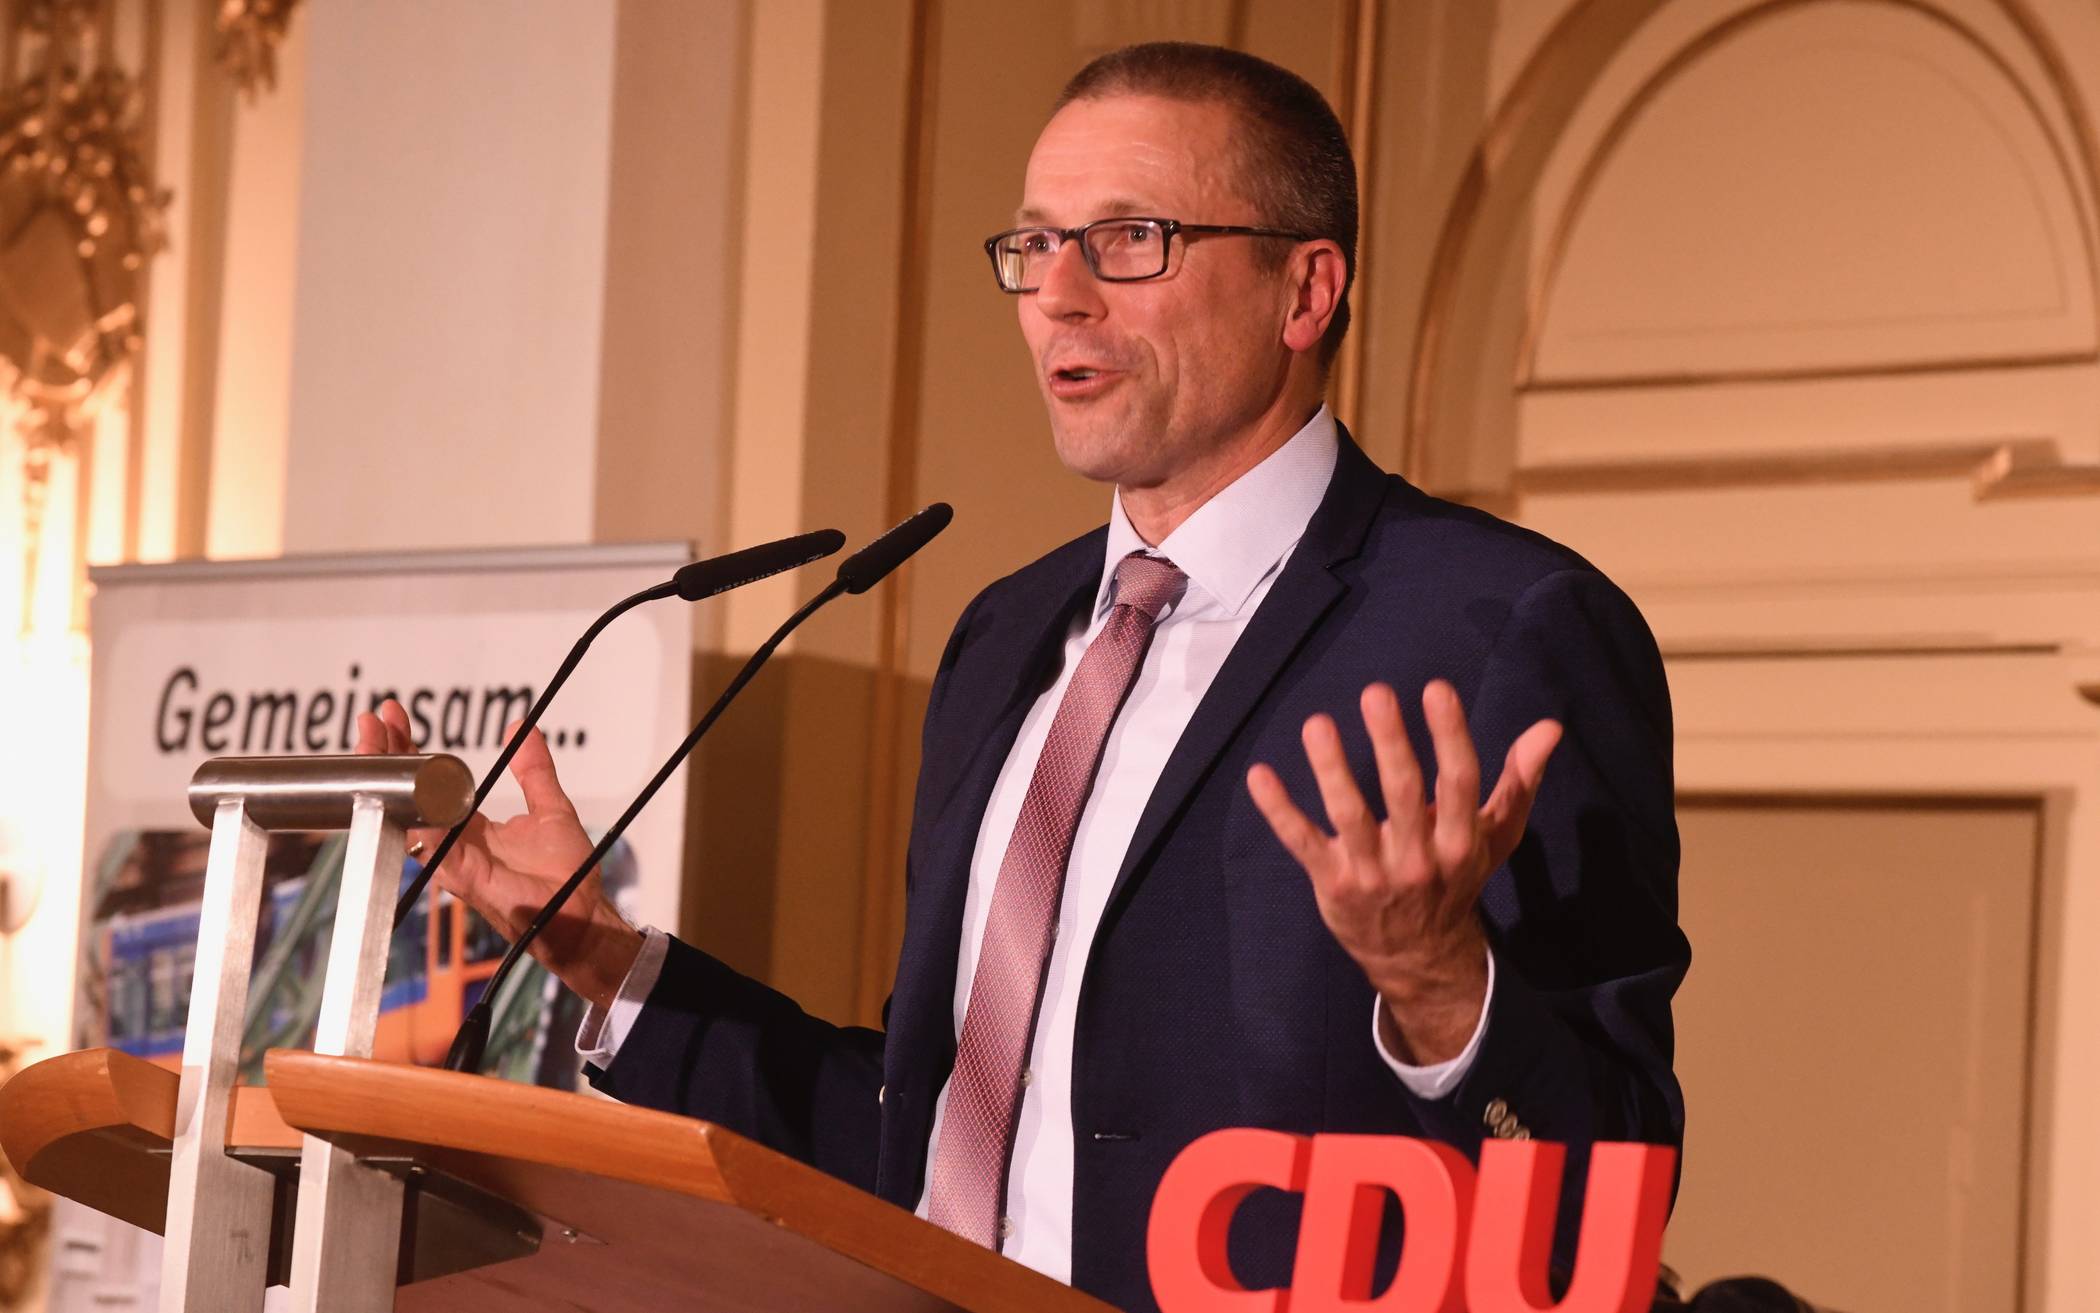  Uwe Schneidewind ist gemeinsamer Oberbürgermeister-Kandidat von CDU und Grünen für die Kommunalwahl am 13. September 2020.   